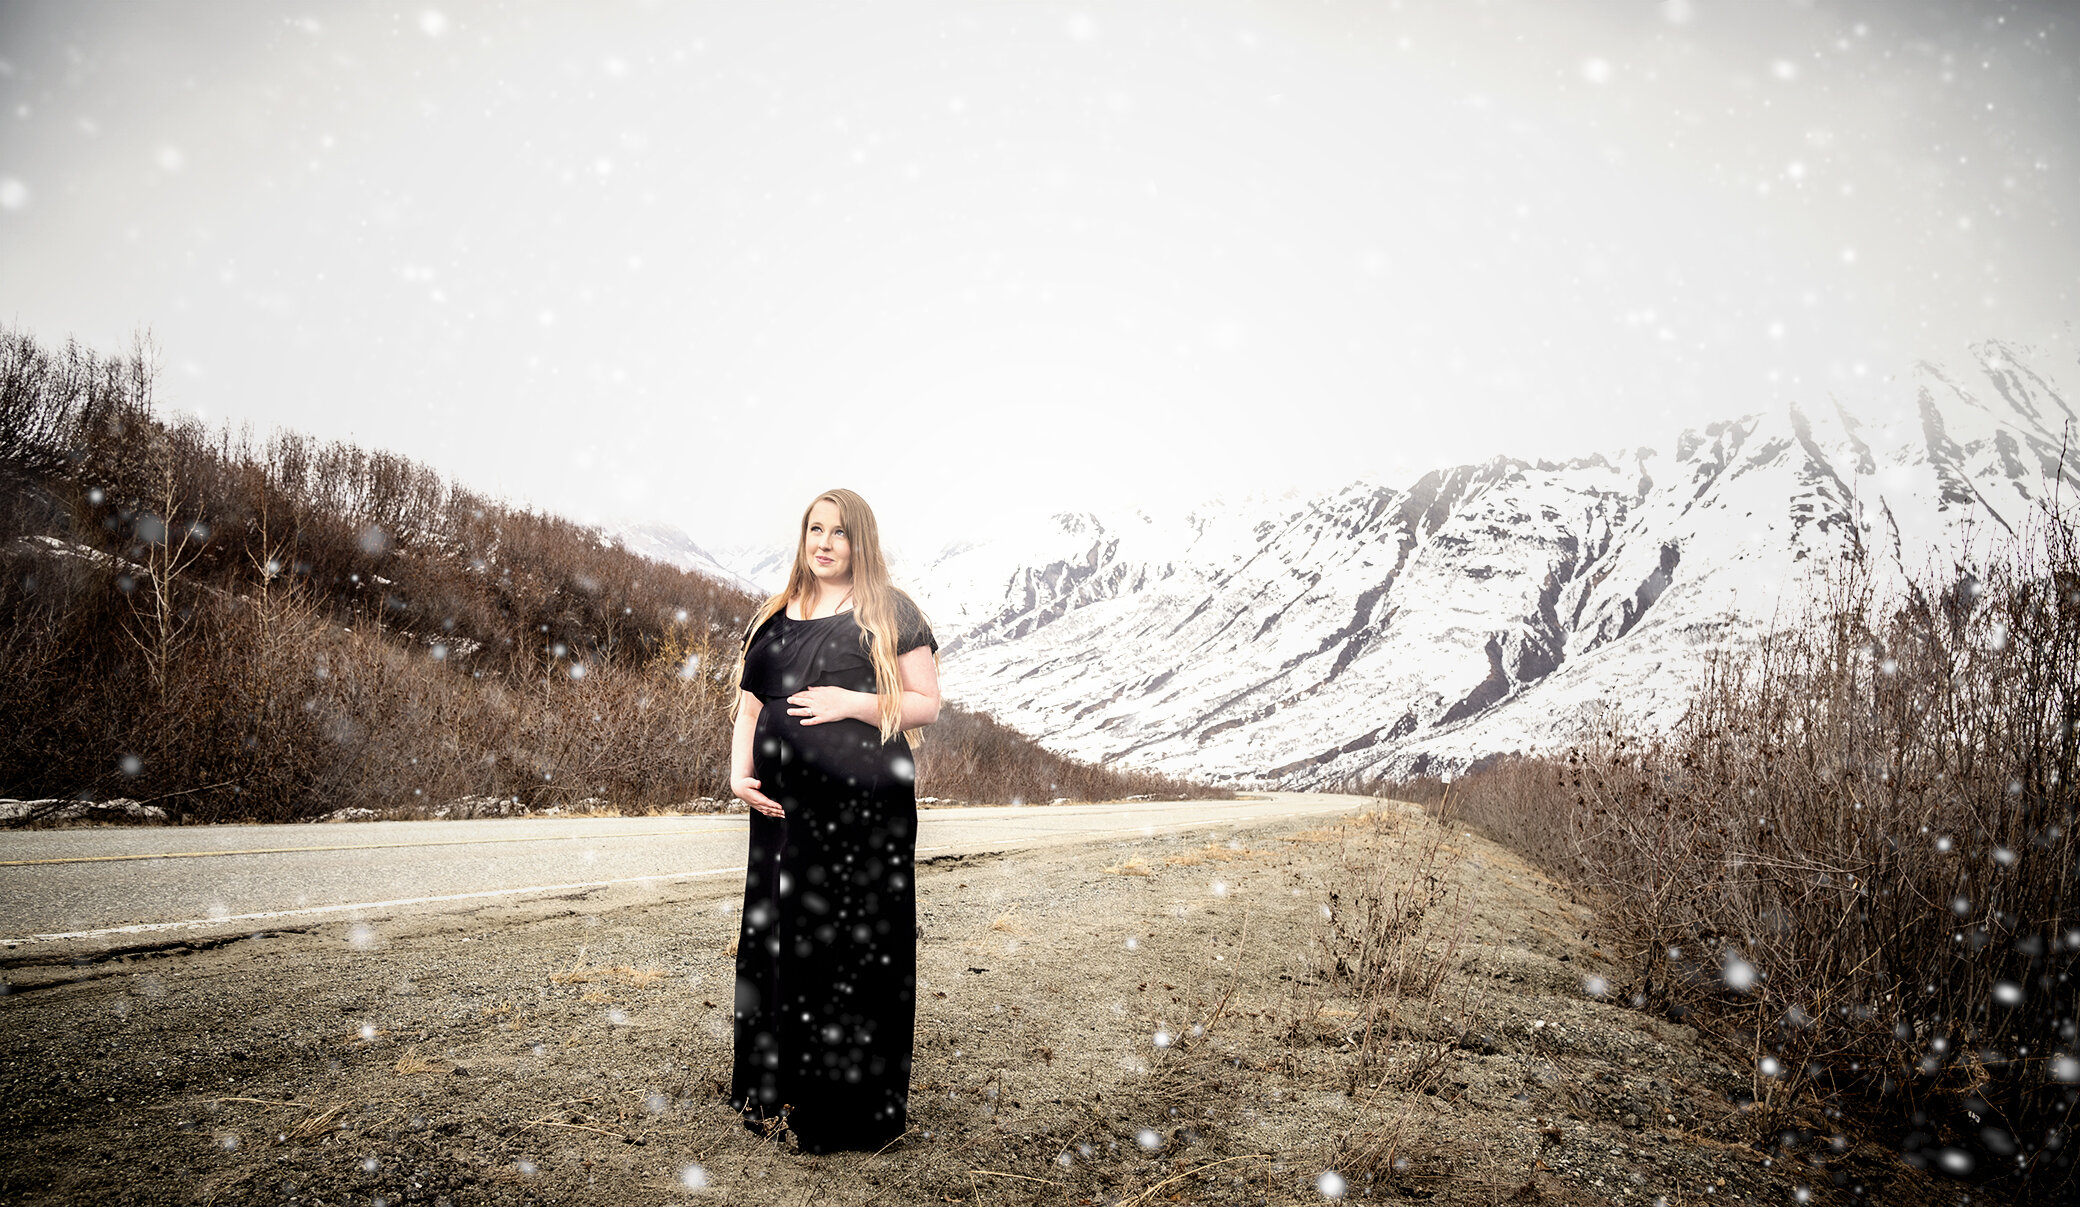 WEB_CarolLeeJaynePortraits_Kaitlyn_Maternity_Alaska_2021-15.jpg